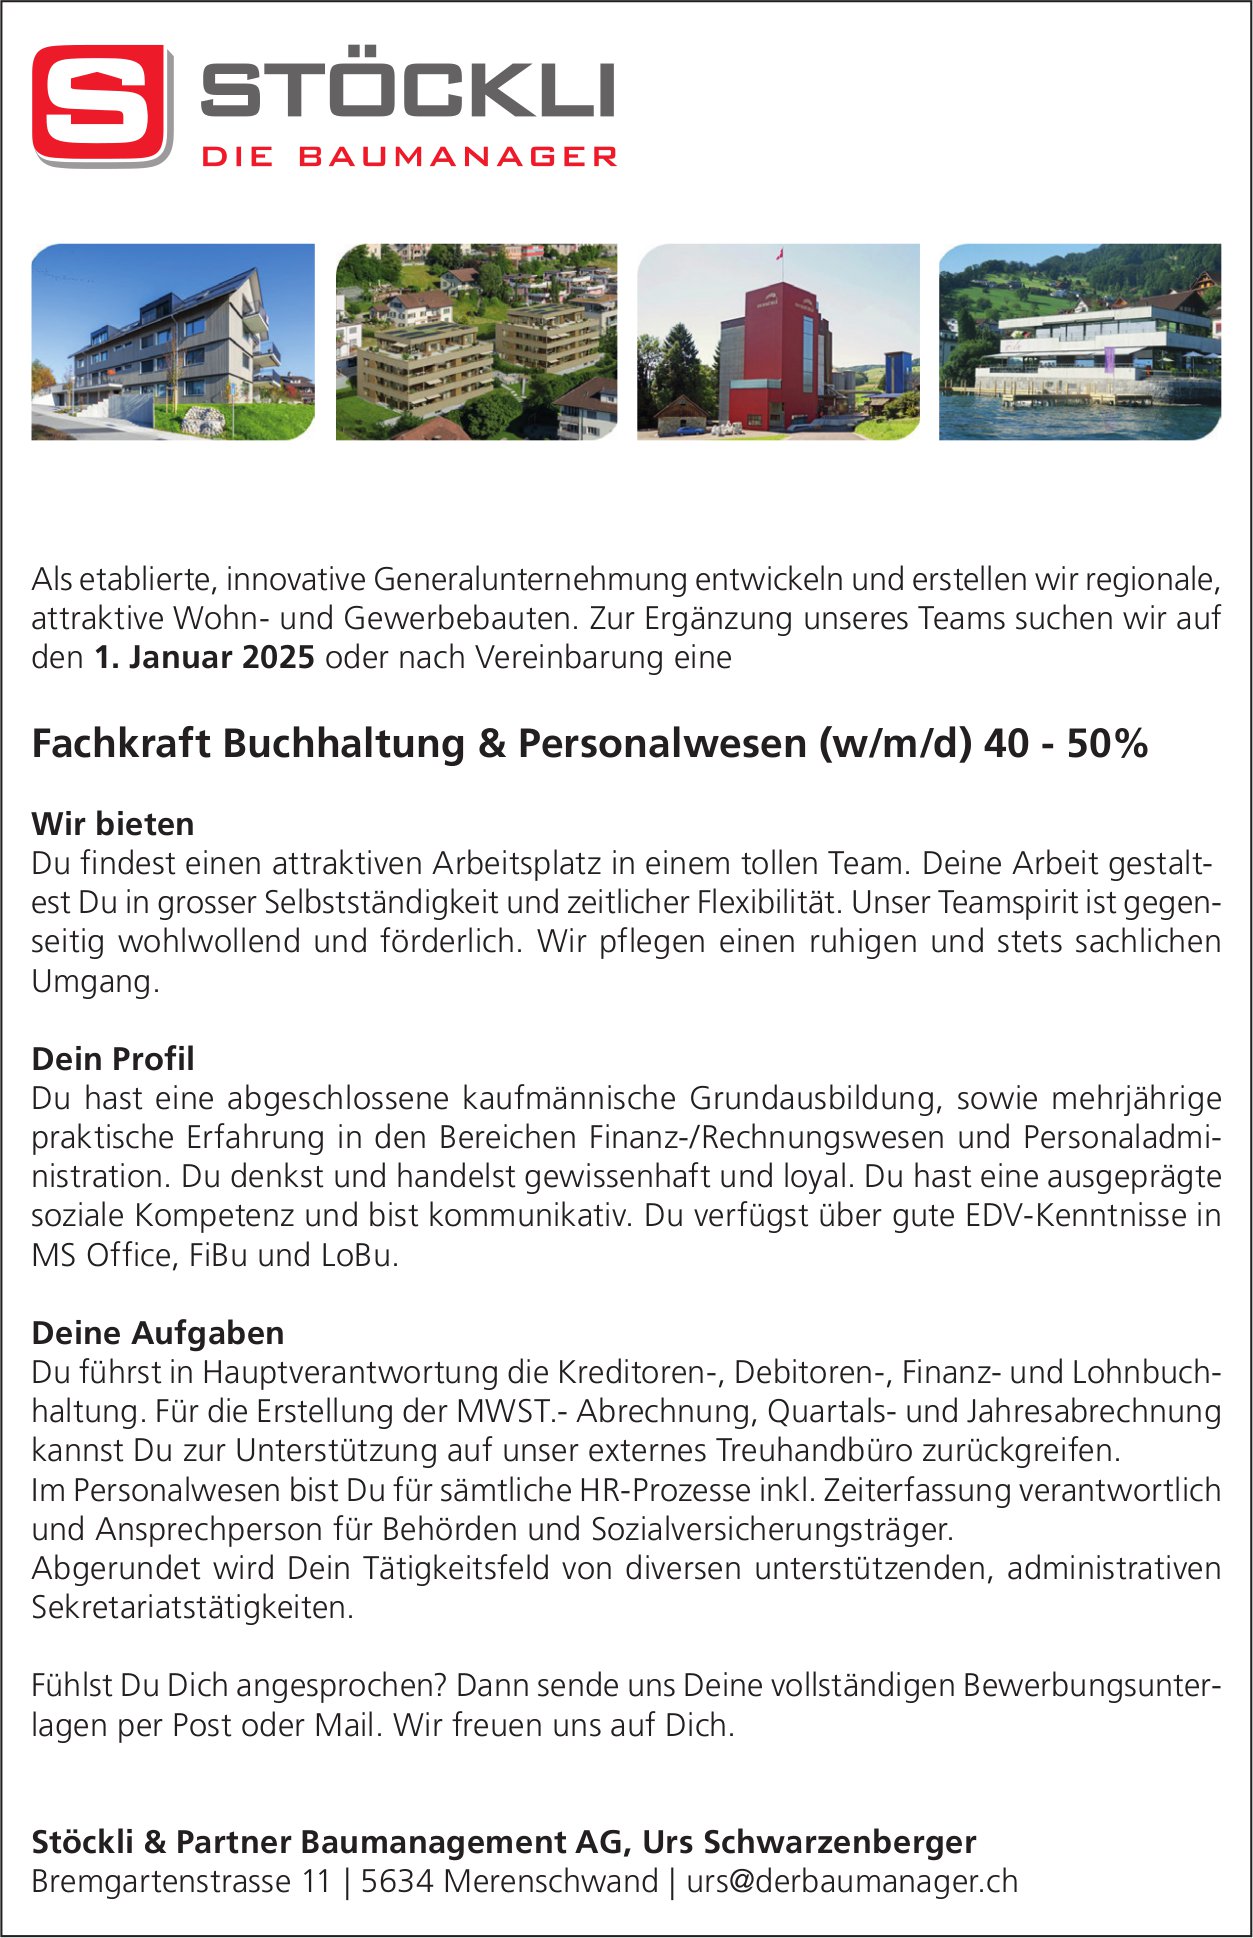 Fachkraft Buchhaltung & Personalwesen (w/m/d) 40-50%, Stöckli & Partner Baumanagement AG, Merenschwand, gesucht